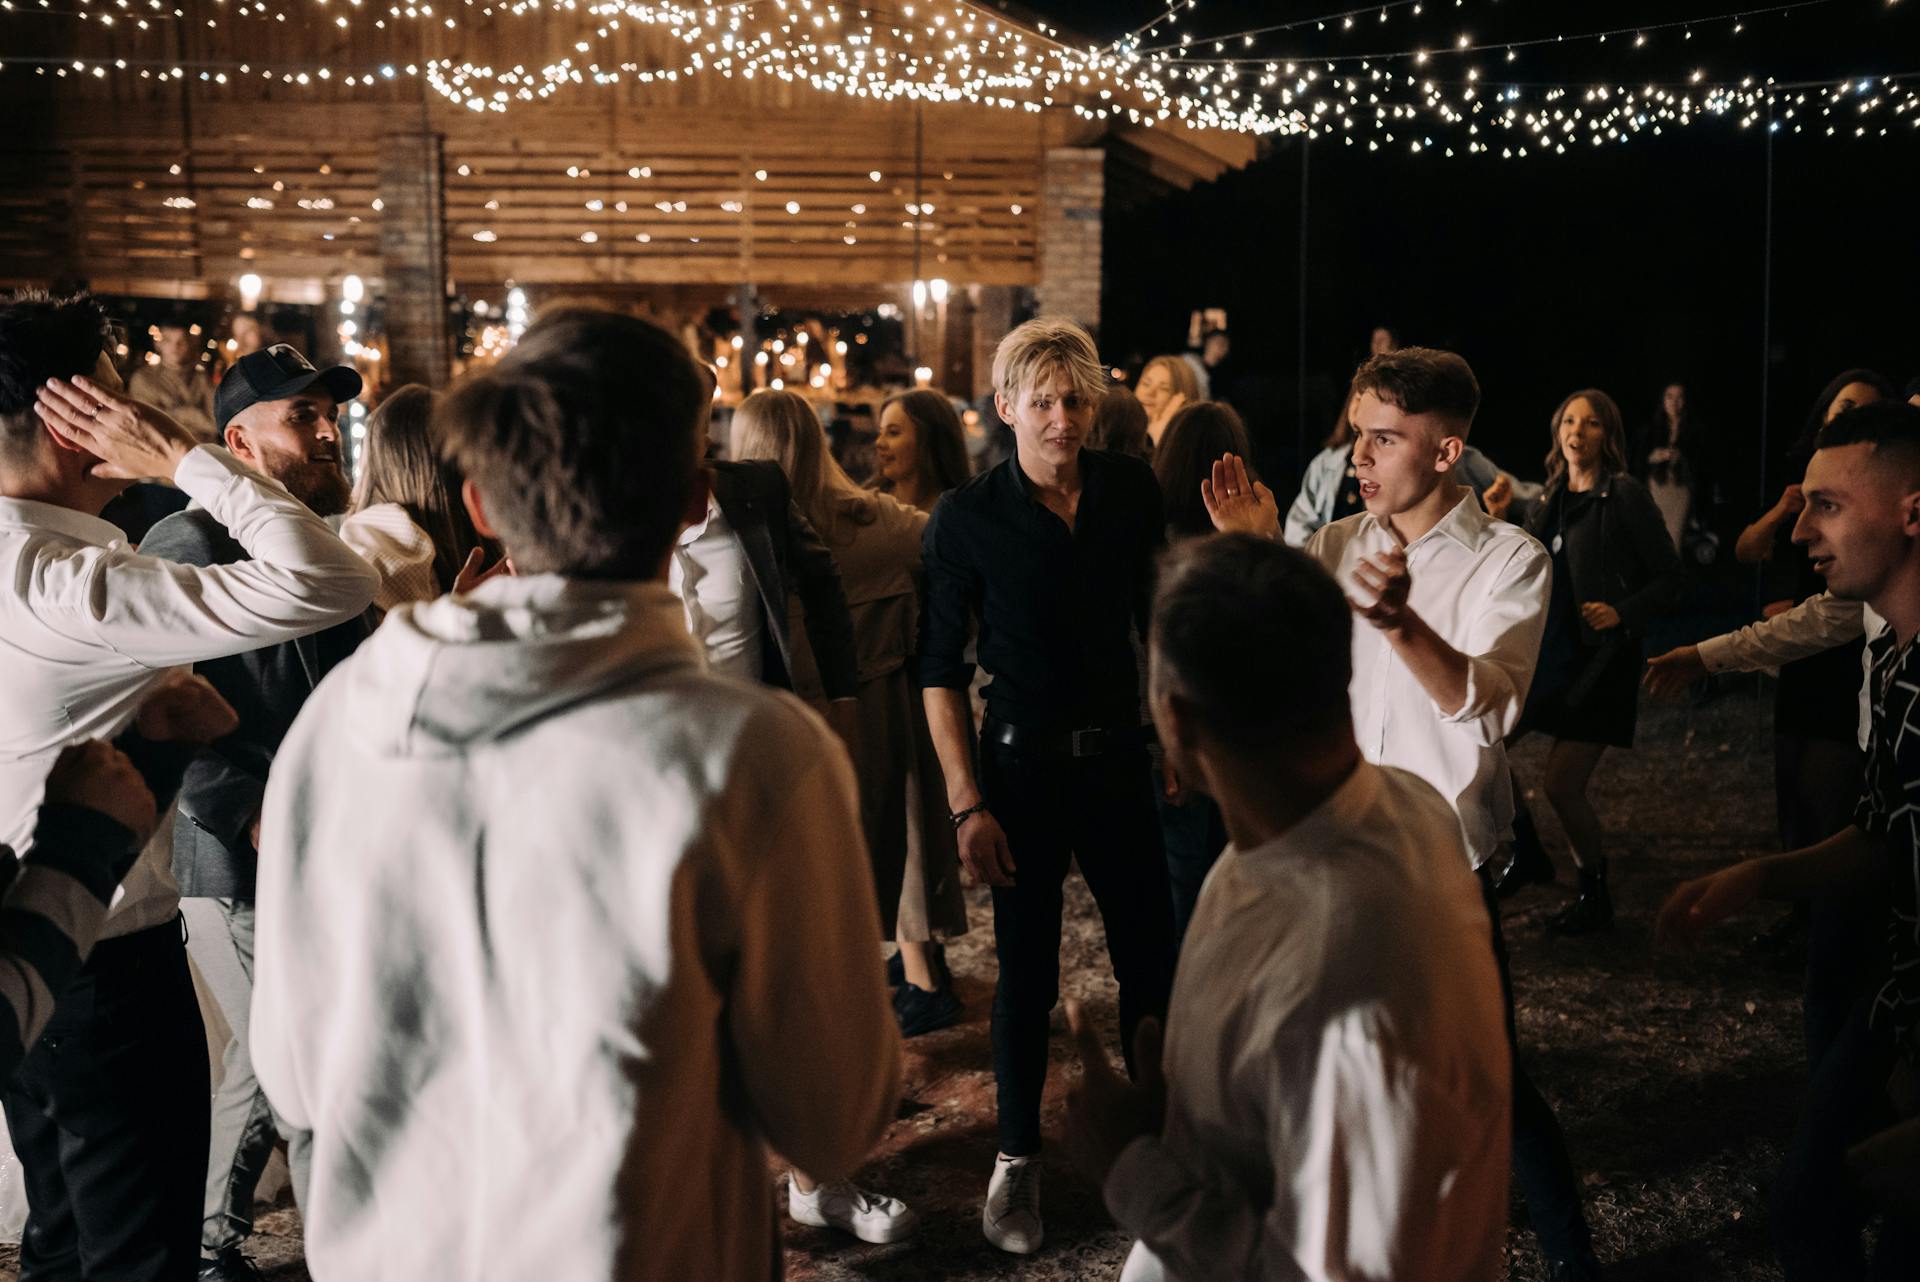 Invitados bailando en una boda | Fuente: Pexels